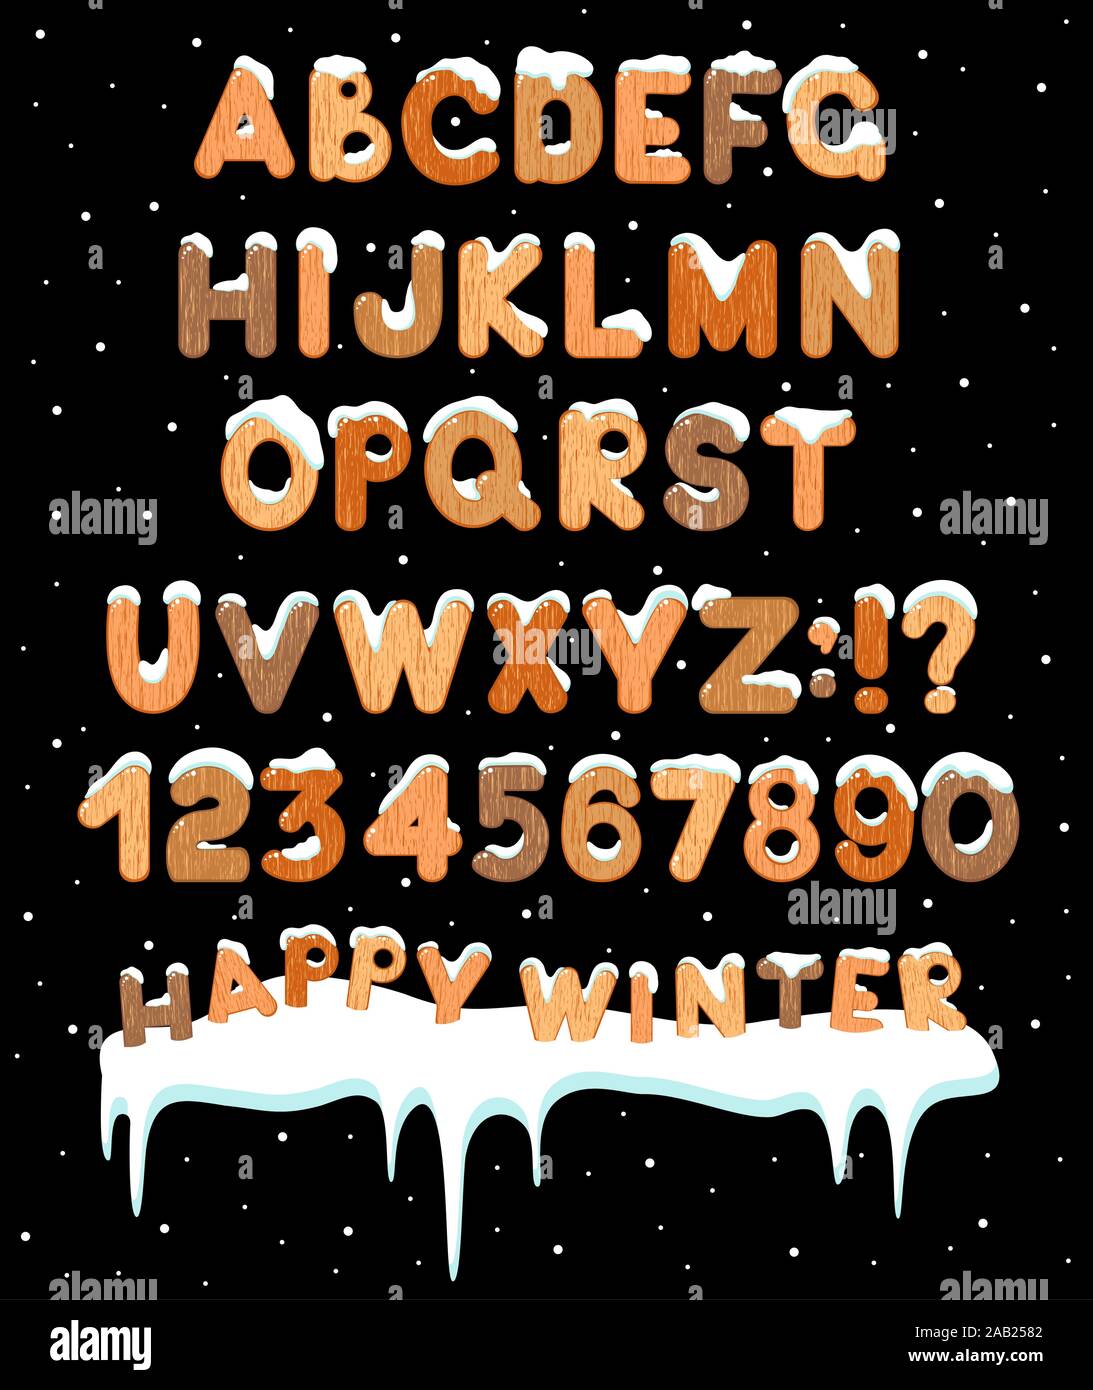 Ensemble de l'ABC des lettres, chiffres et symboles avec texture en bois et la neige. Dessin animé enfantin avec l'alphabet de la calotte glaciaire pour Noël et d'hiver mer Illustration de Vecteur